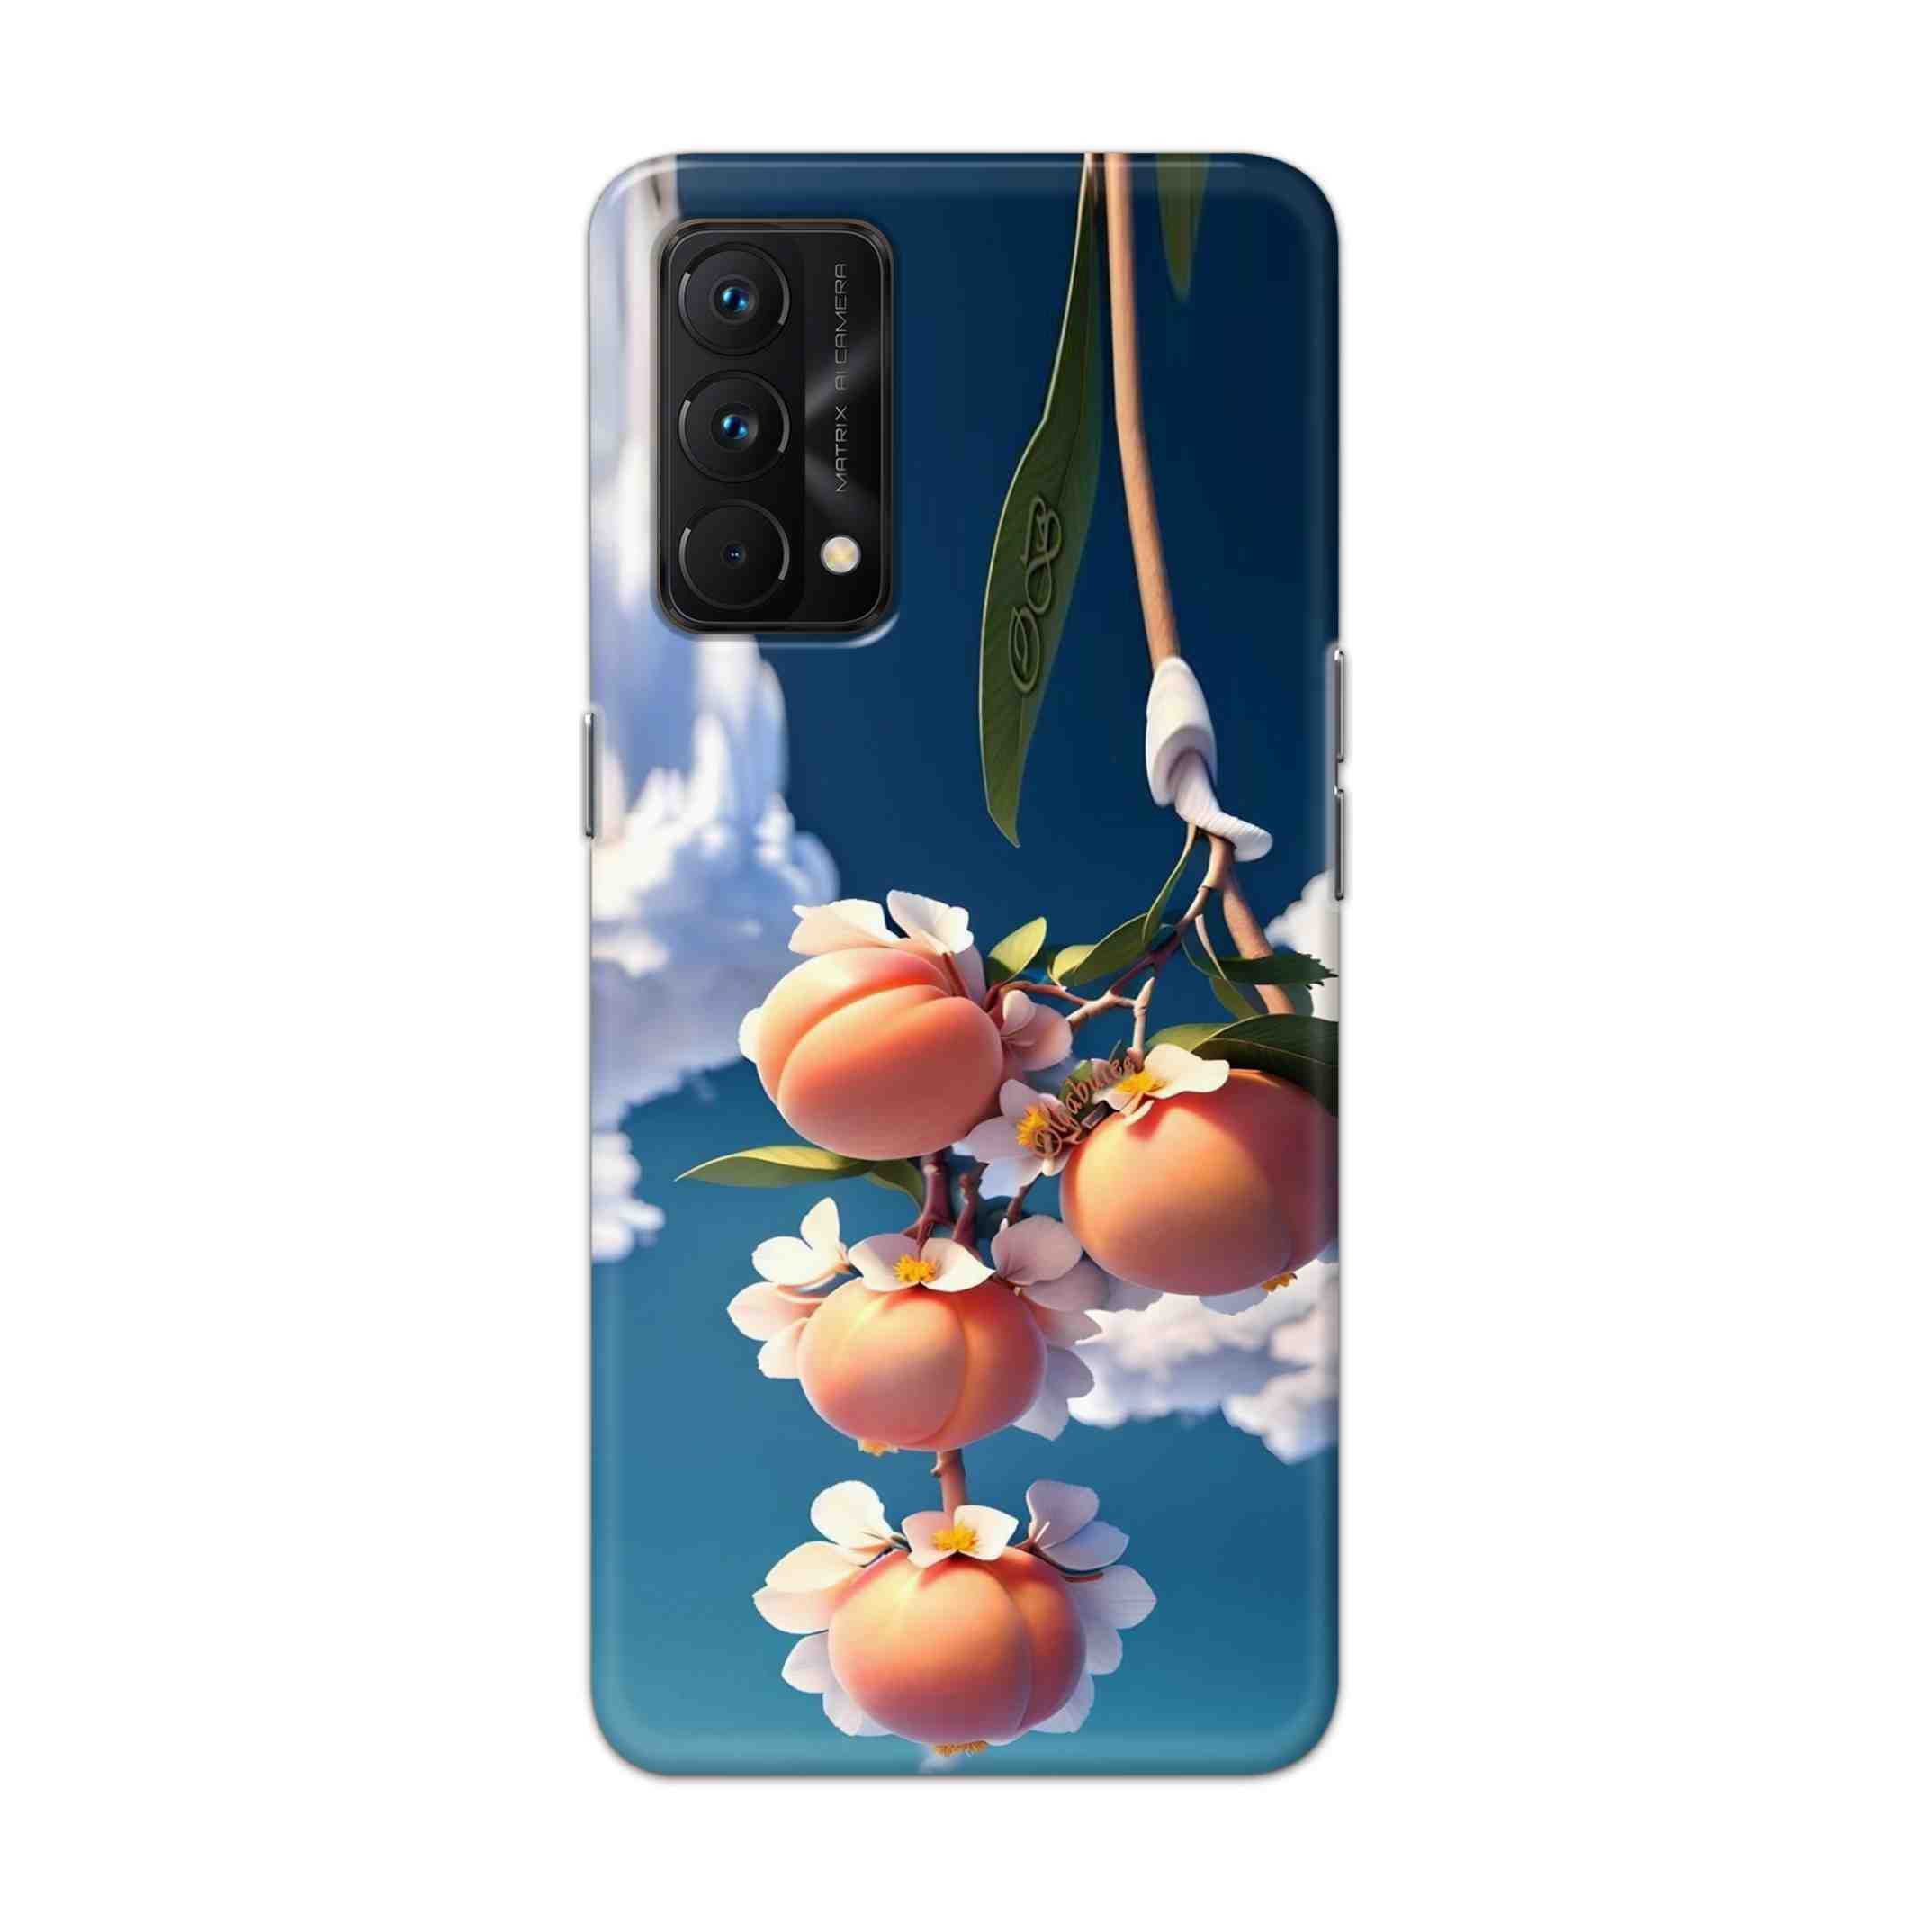 Buy Fruit Hard Back Mobile Phone Case Cover For Realme GT Master Online